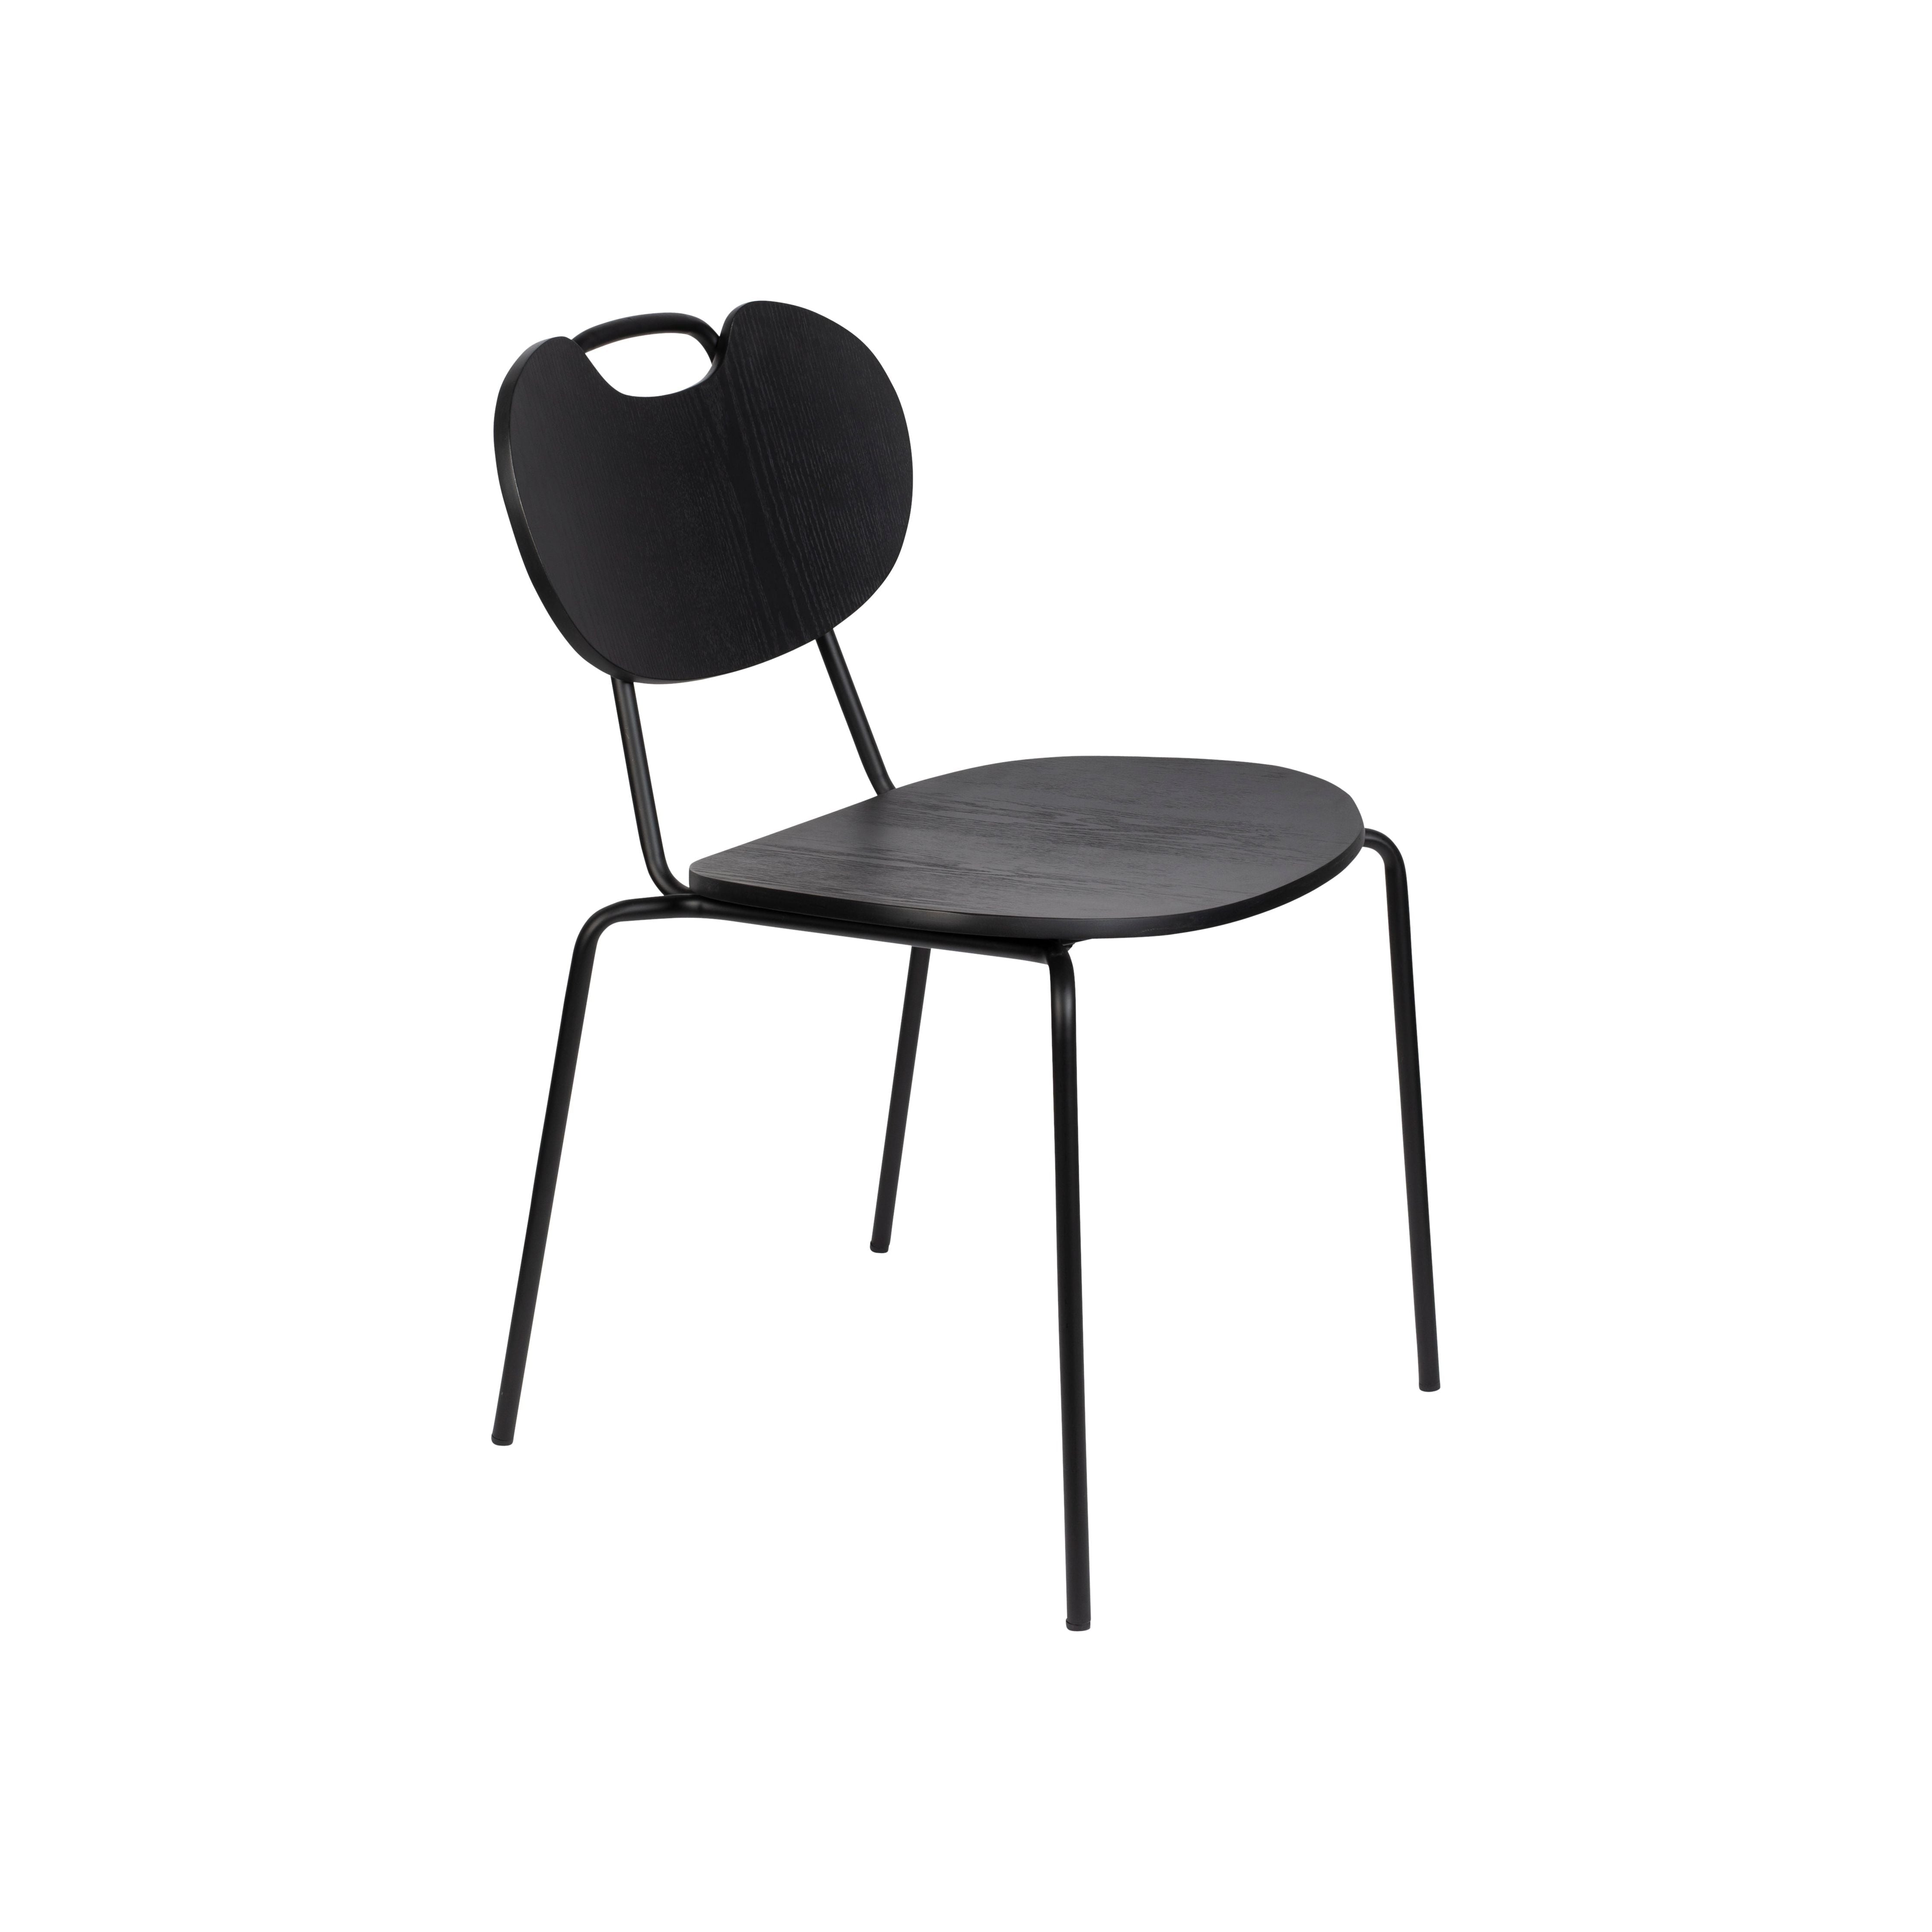 Chair aspen wood black | 2 pieces